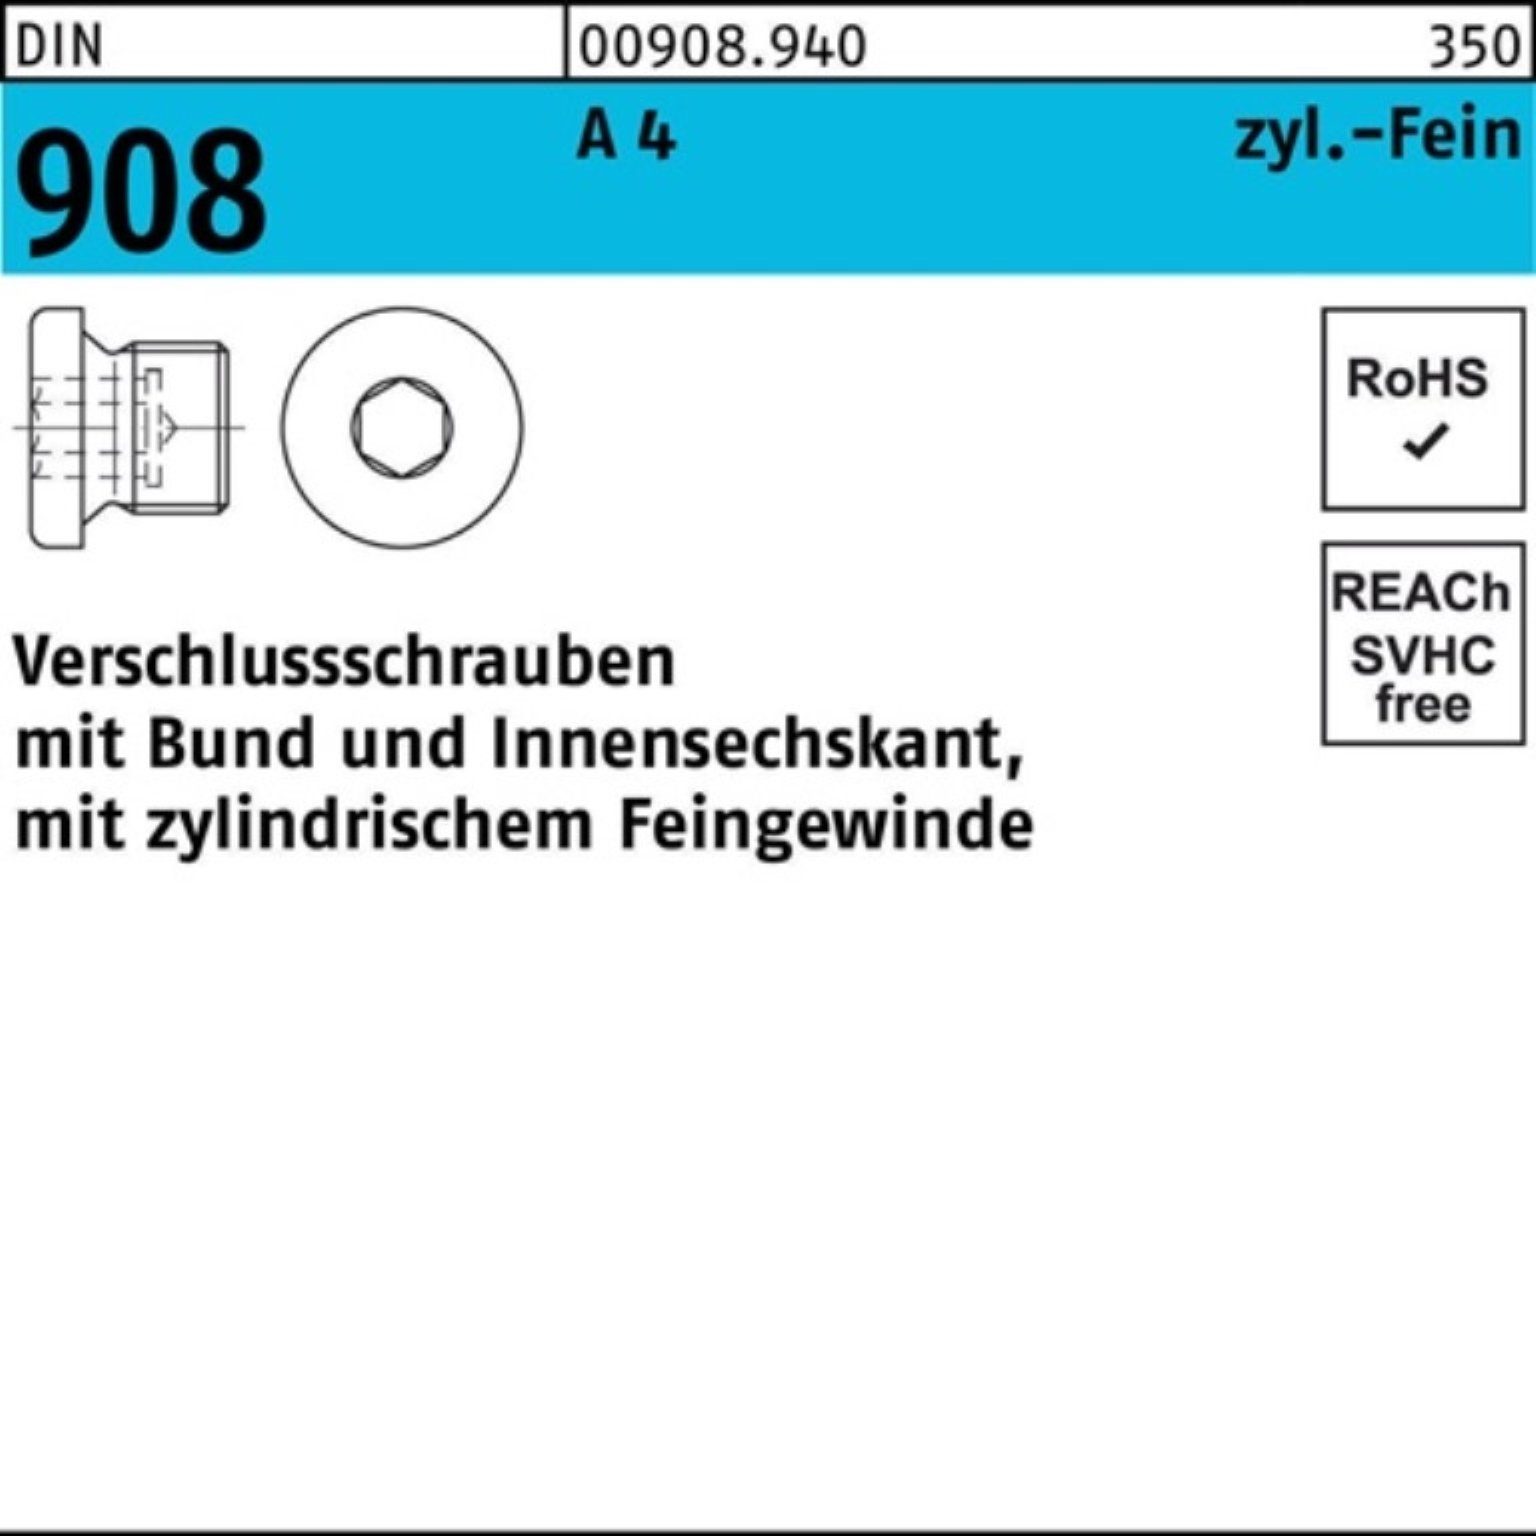 A Verschlußschraube St 908 2 Bund/Innen-6kt 50 M30x 4 Reyher DIN Pack Schraube 100er